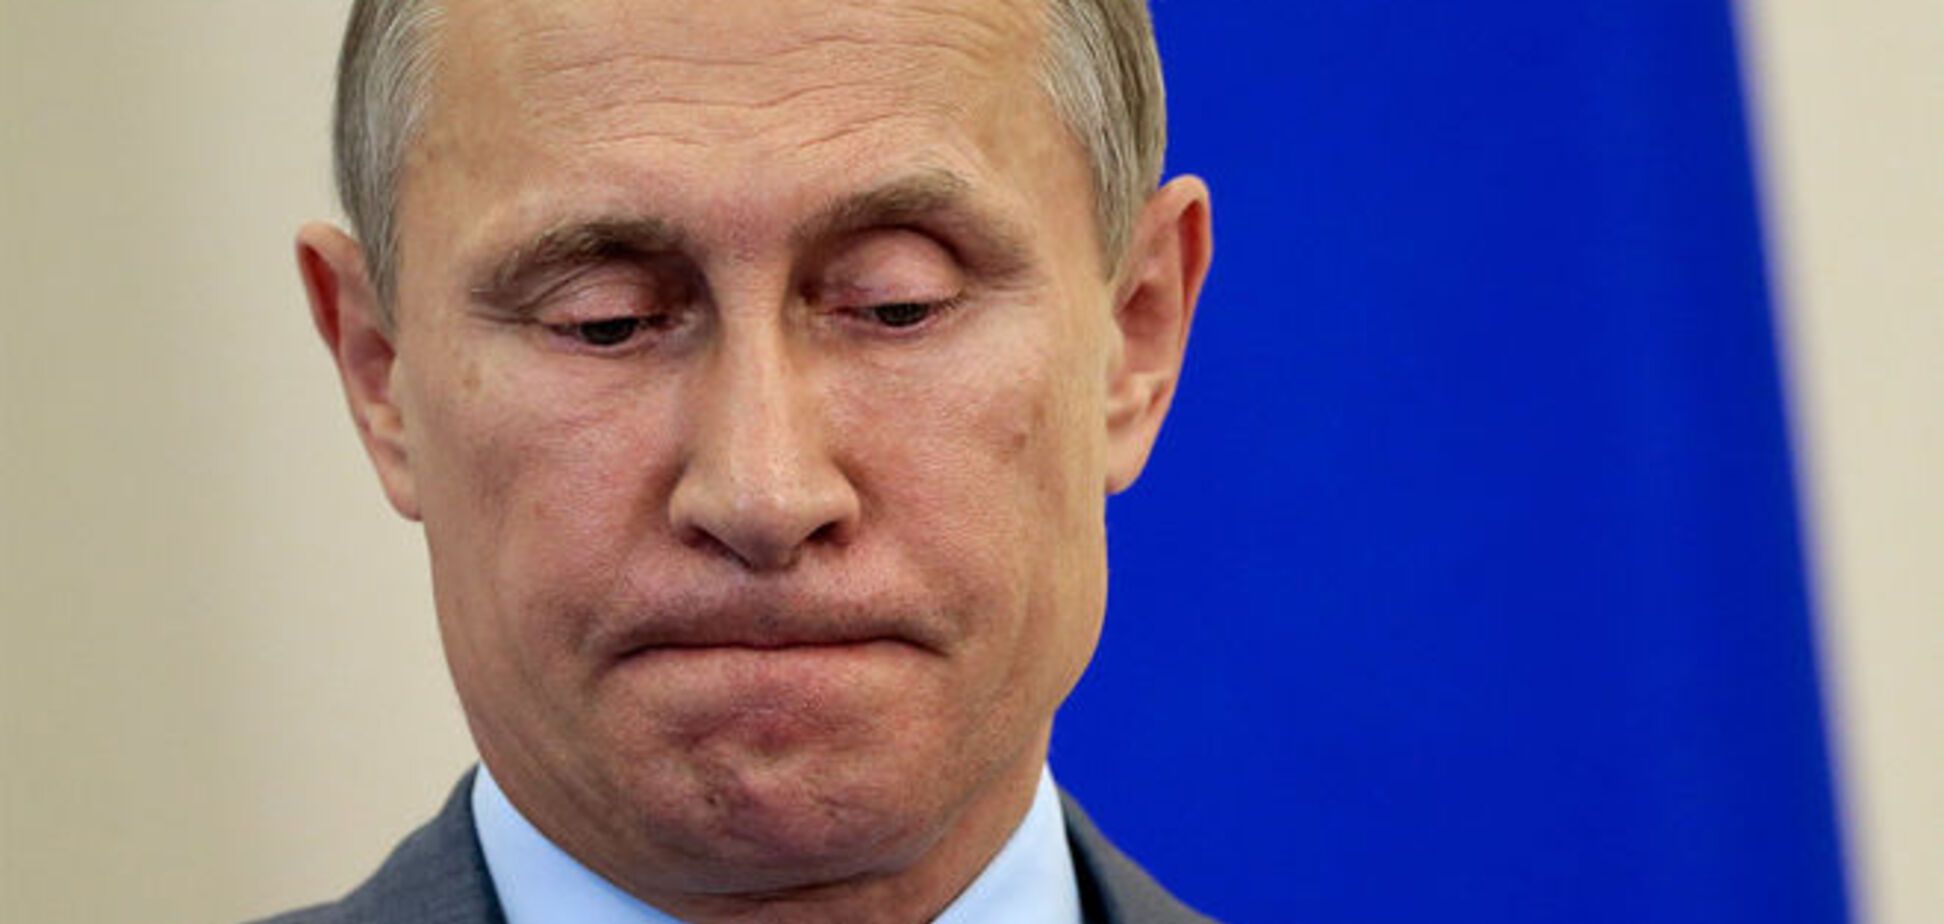 Фельгенгауэр назвал цену, которую Путин готов платить за Донбасс